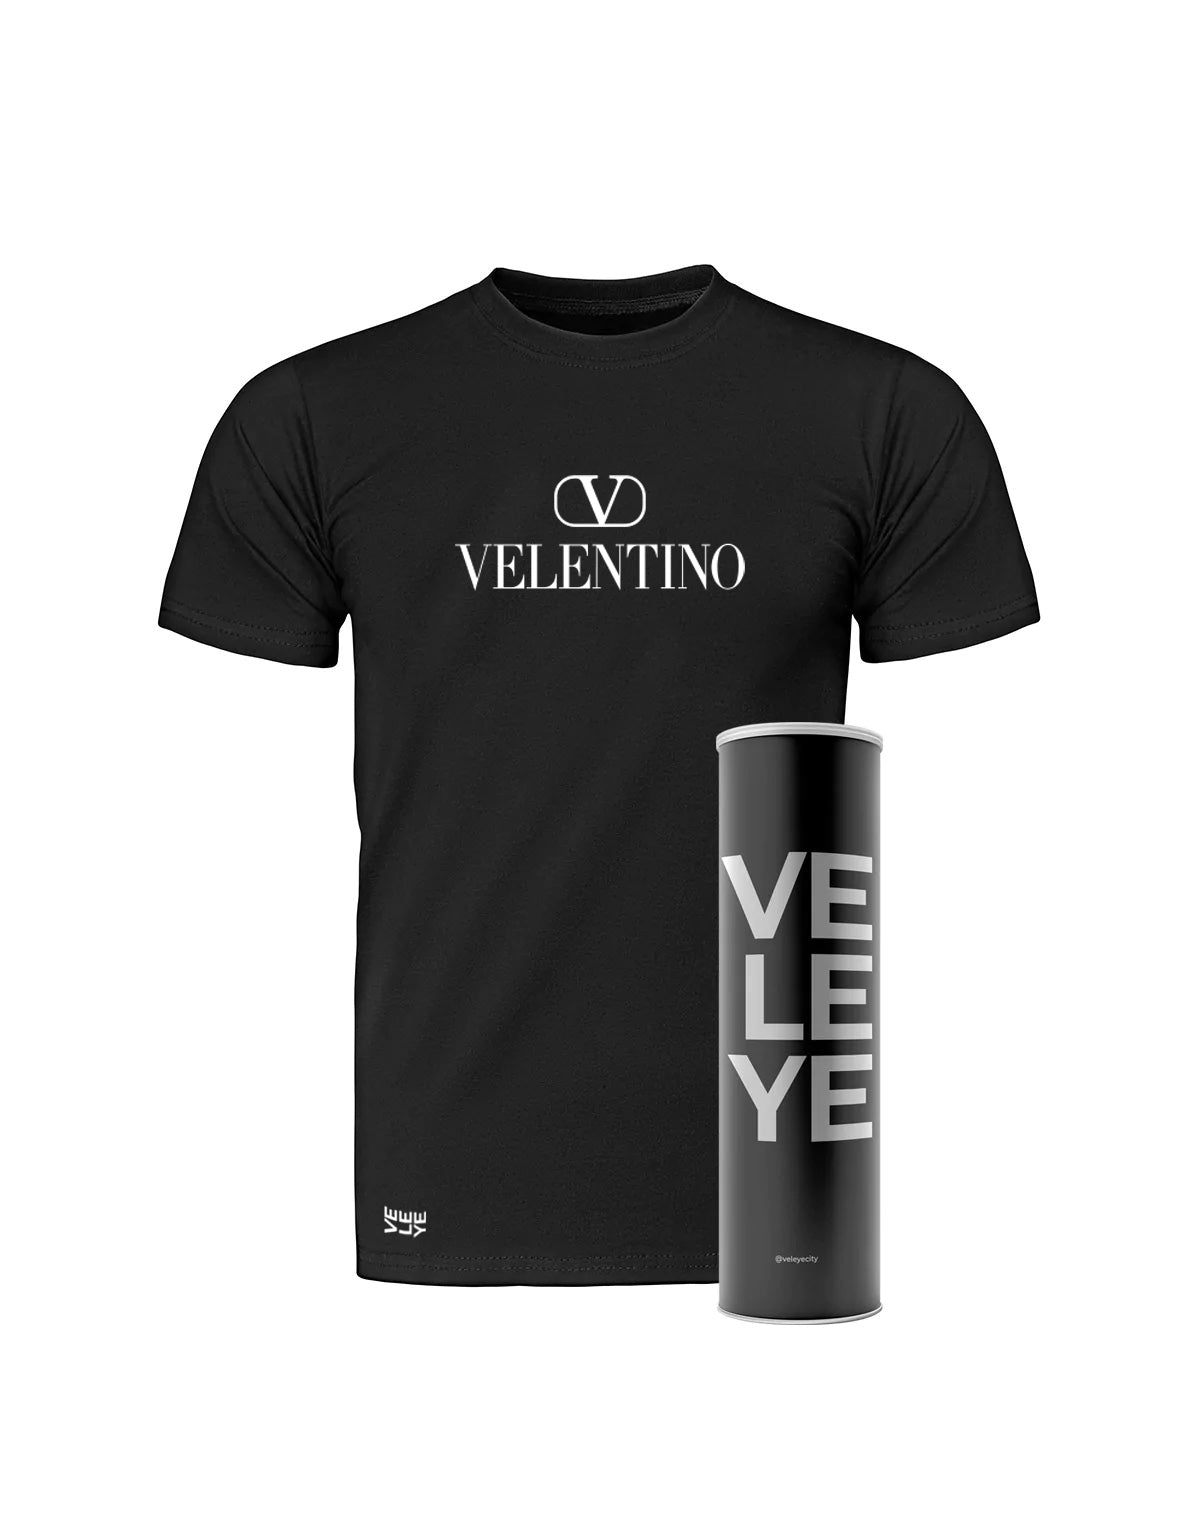 Veleye Limited V1 - Velentino